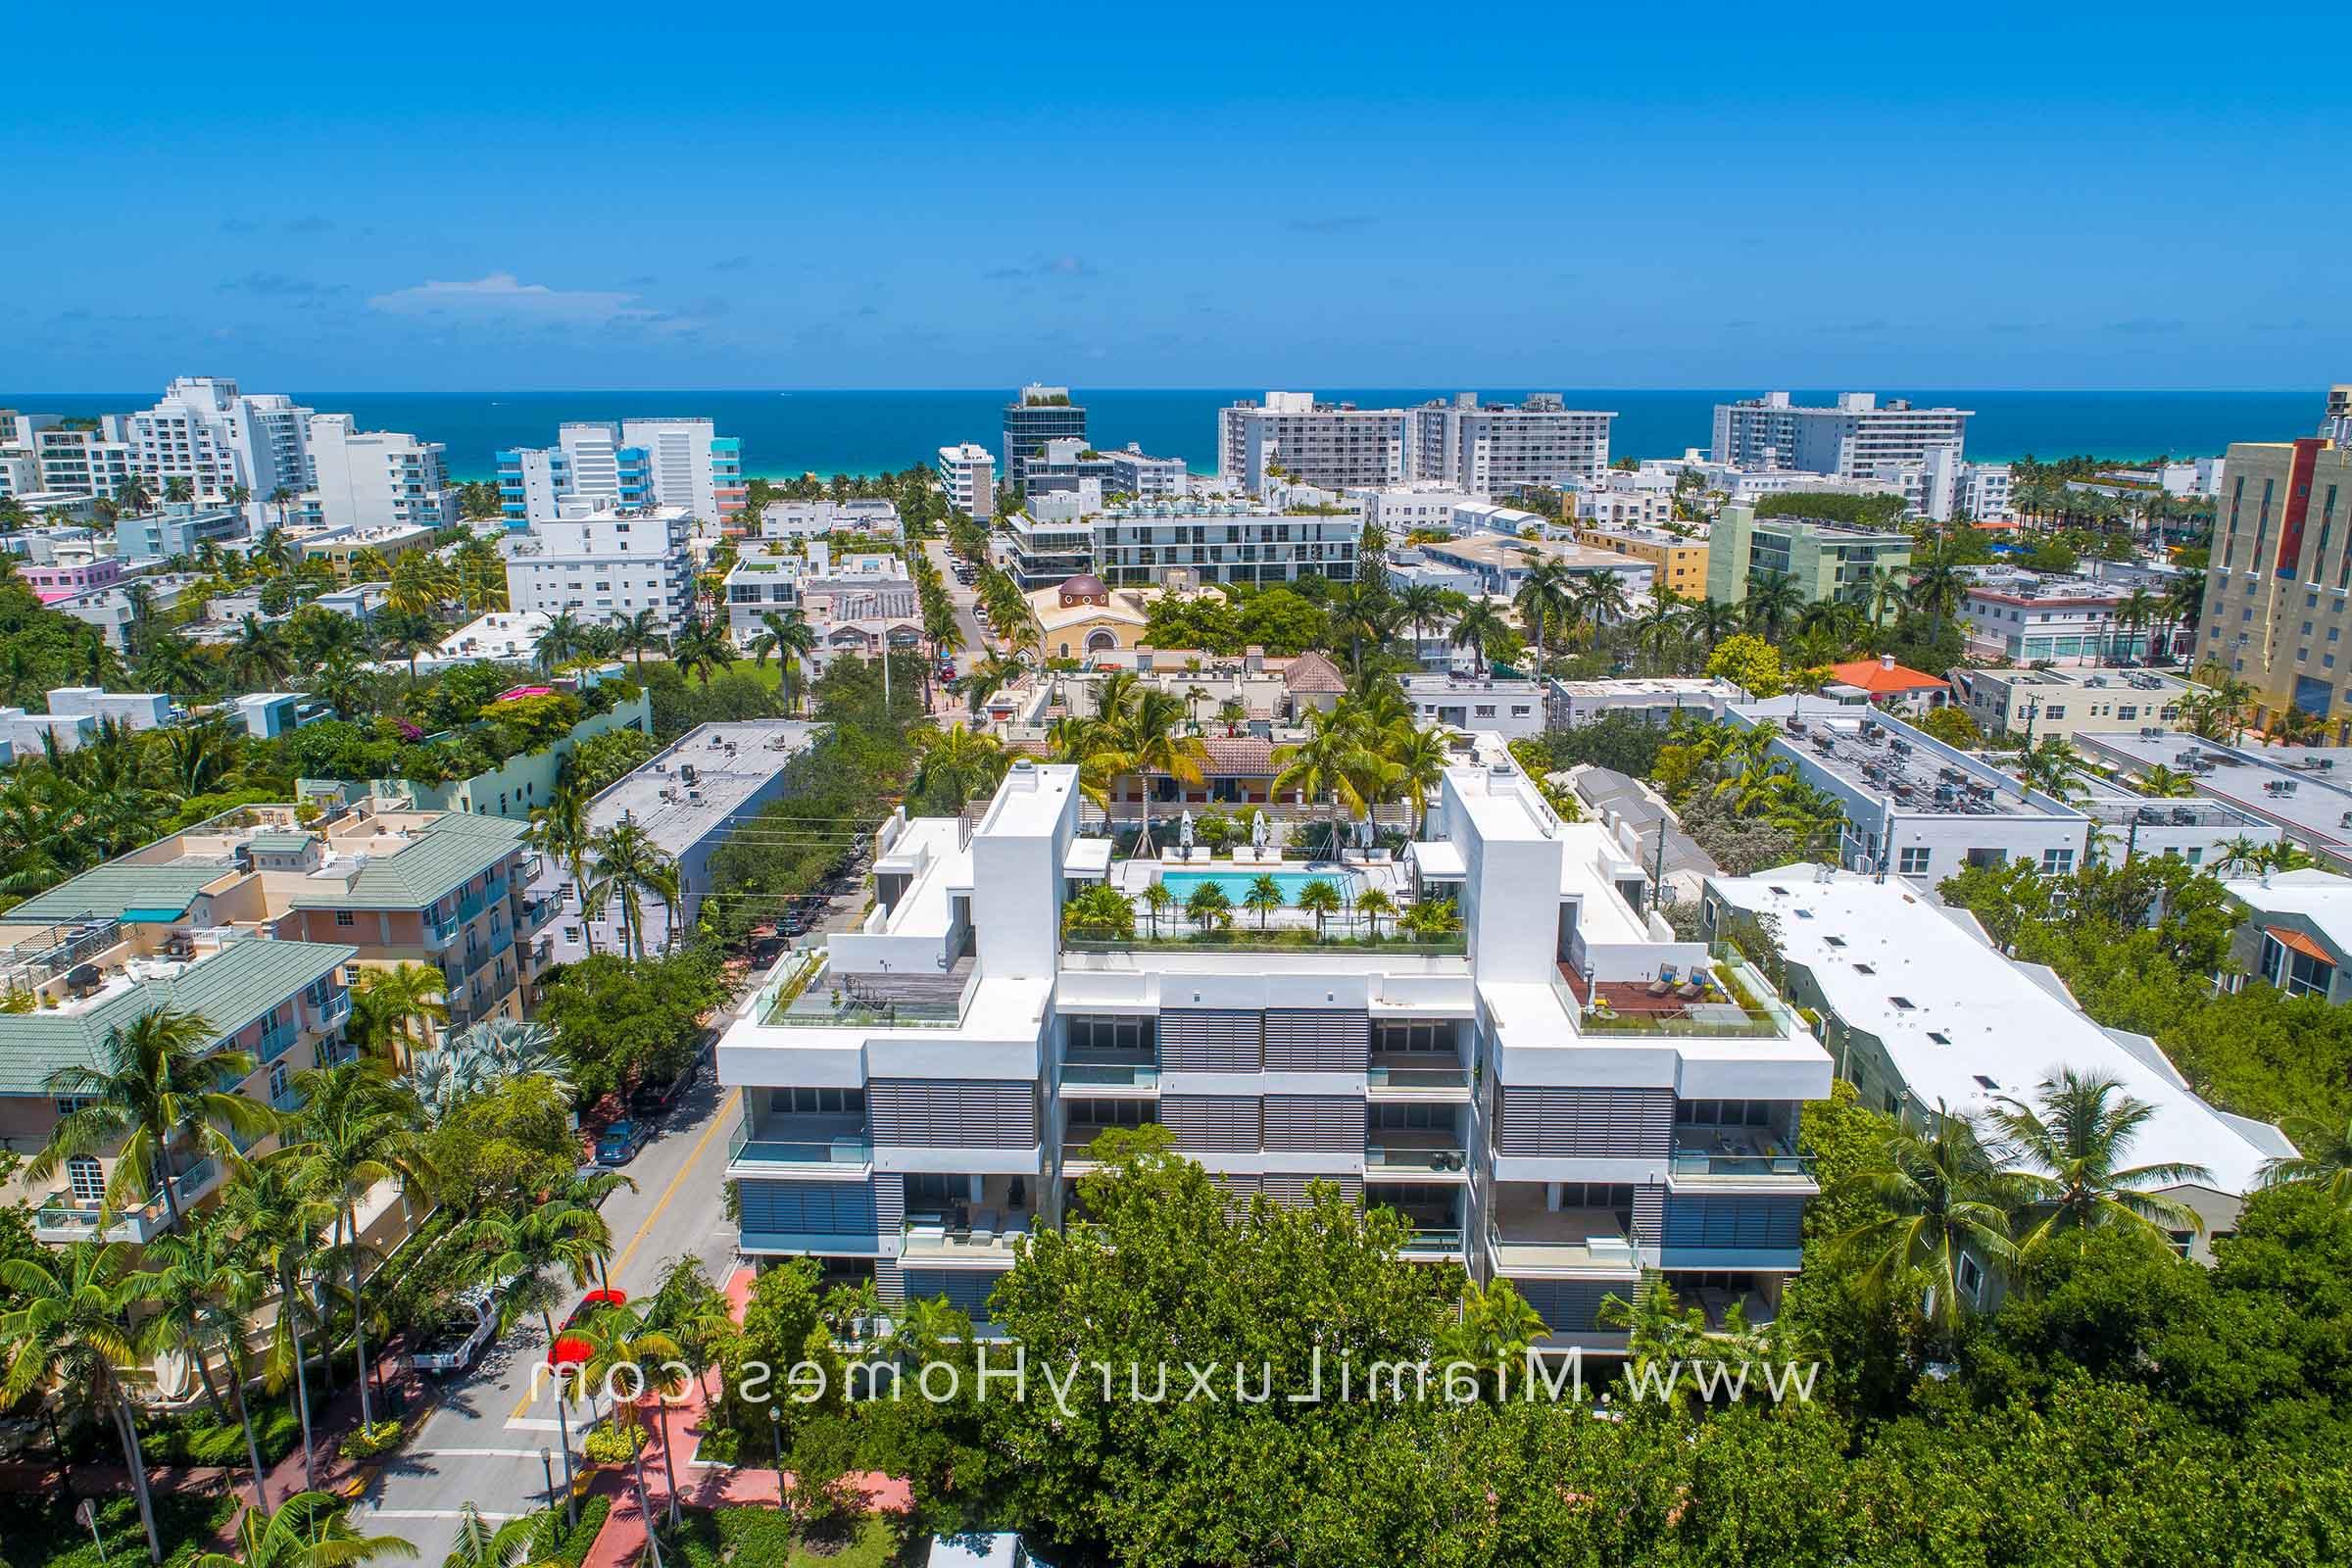 Louver House Condos in South Beach